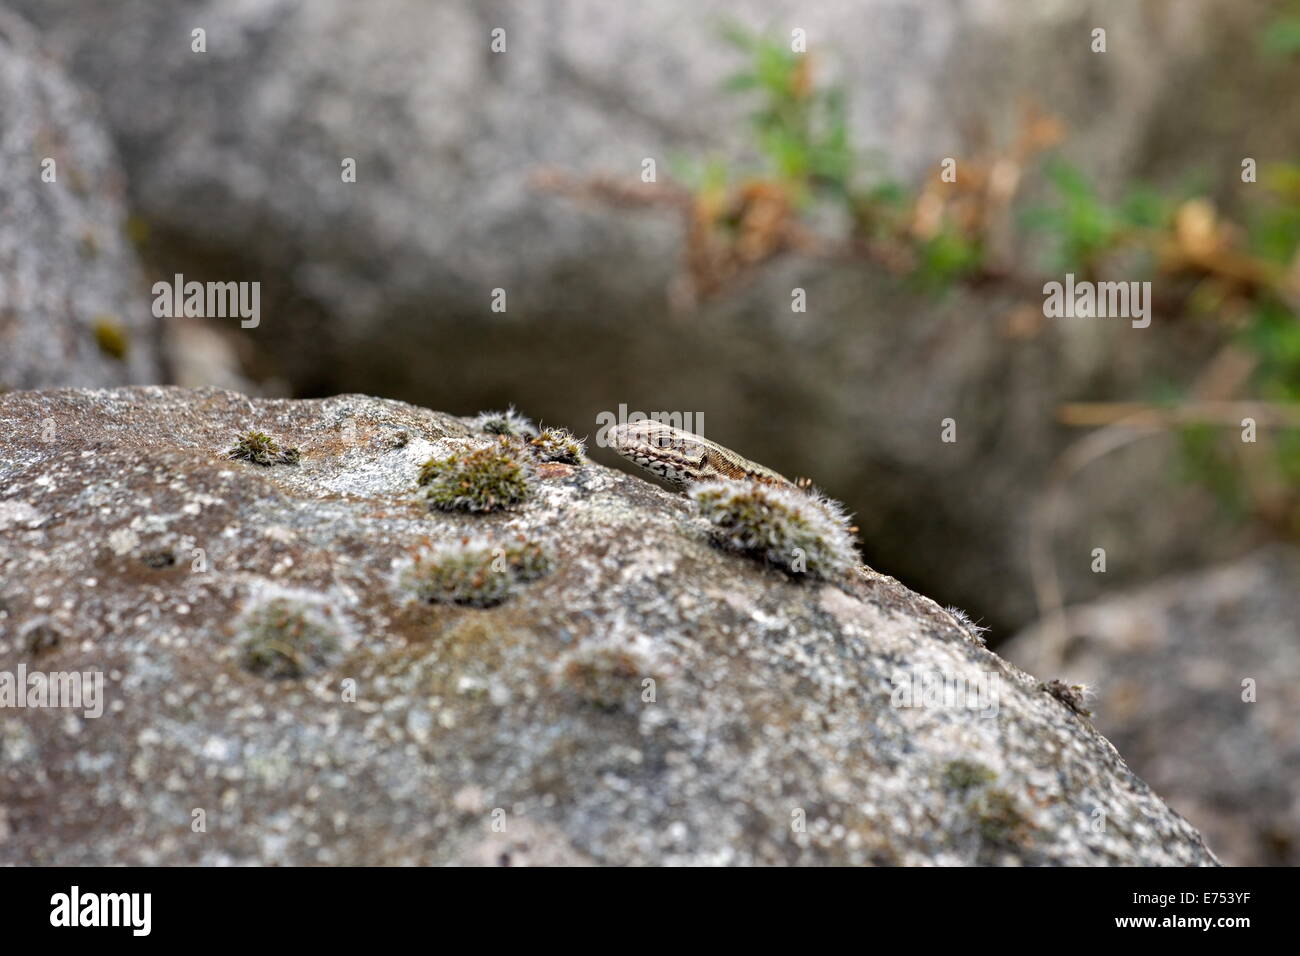 Lizard sticks his head above a rock, Netherlands Stock Photo